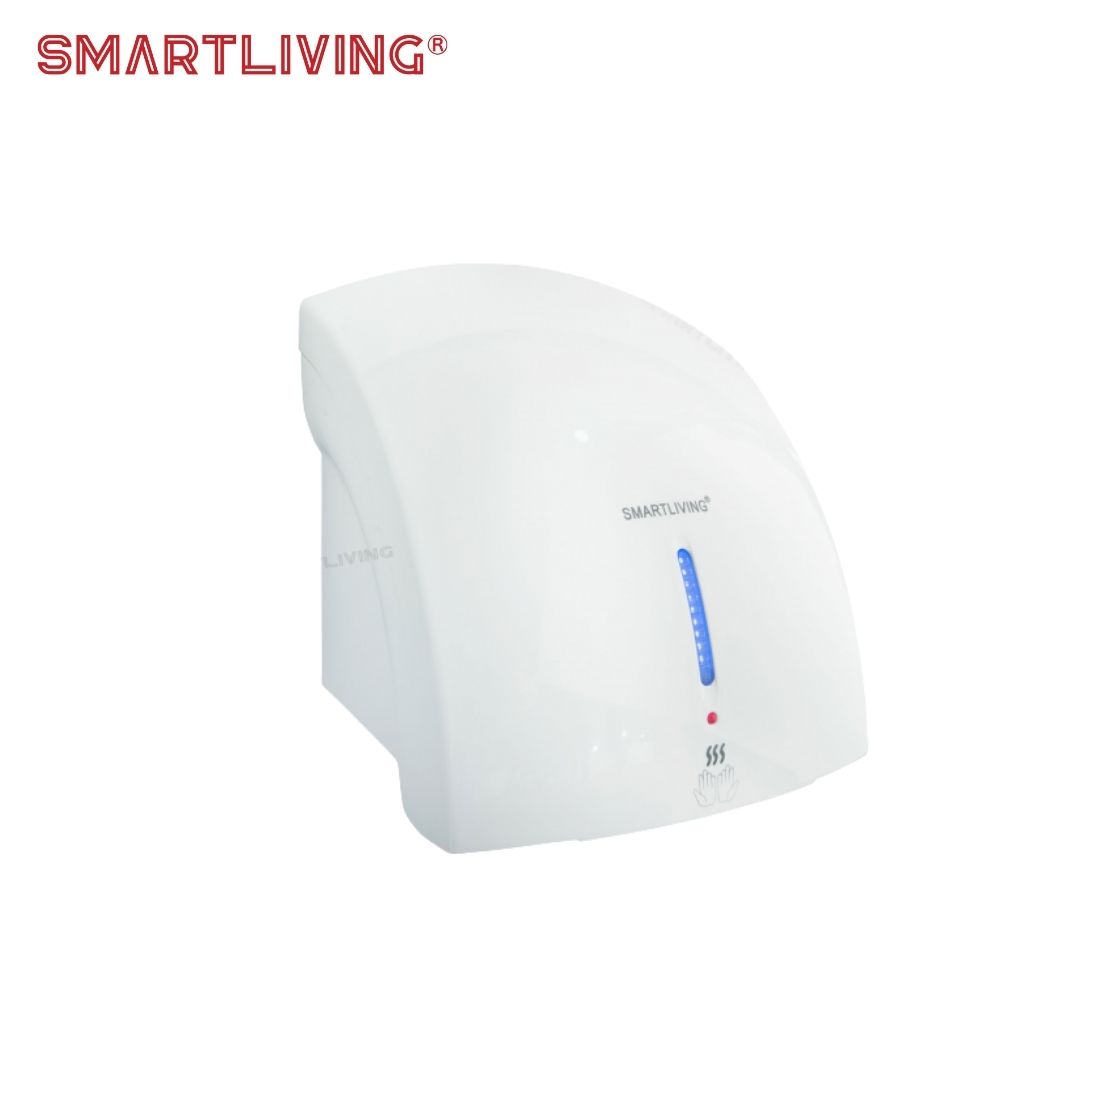 Thời gian lắp đặt của YM201 Smartliving vô cùng dễ dàng, chỉ bằng cách cố định ốc vít lên tường nhà vệ sinh tại vị trí thích hợp trong vòng từ 5-10 phút.